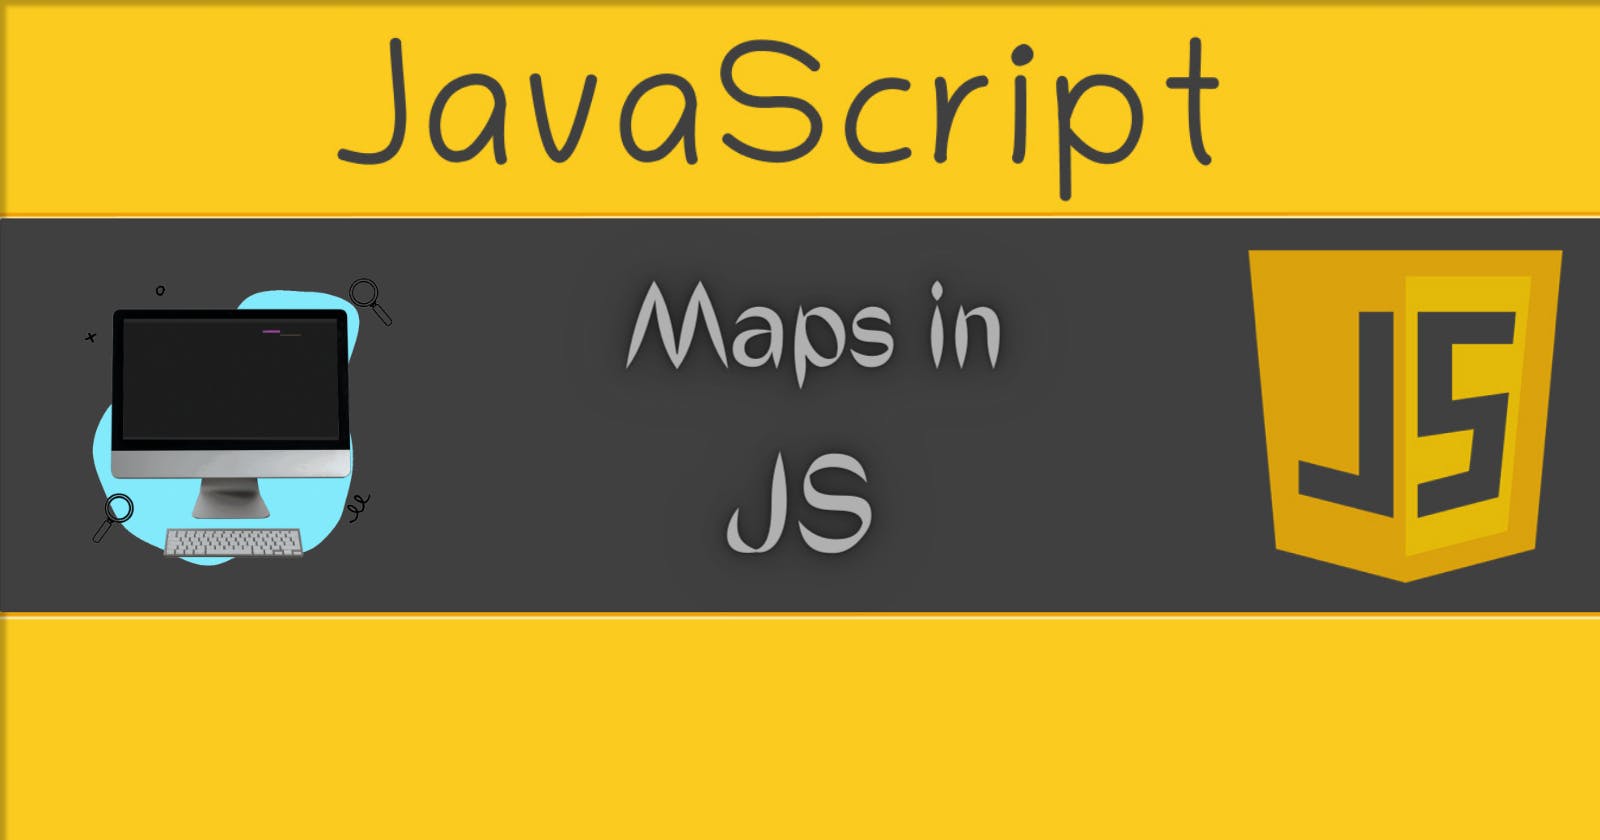 Maps in Js